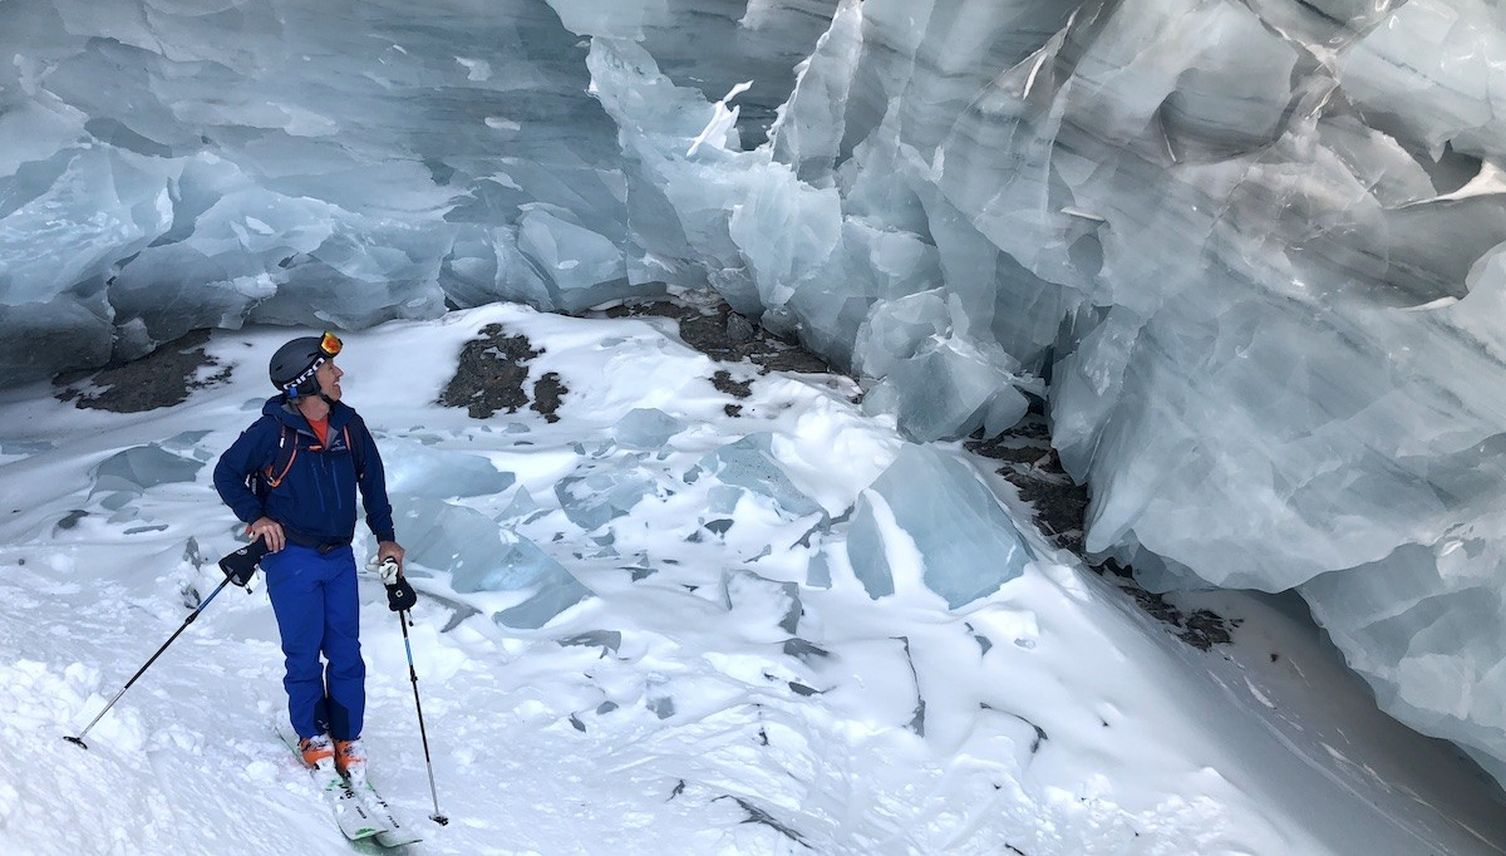 Luzerner Freerider brettern auf Skis durch Bauch des Gletscherriesen